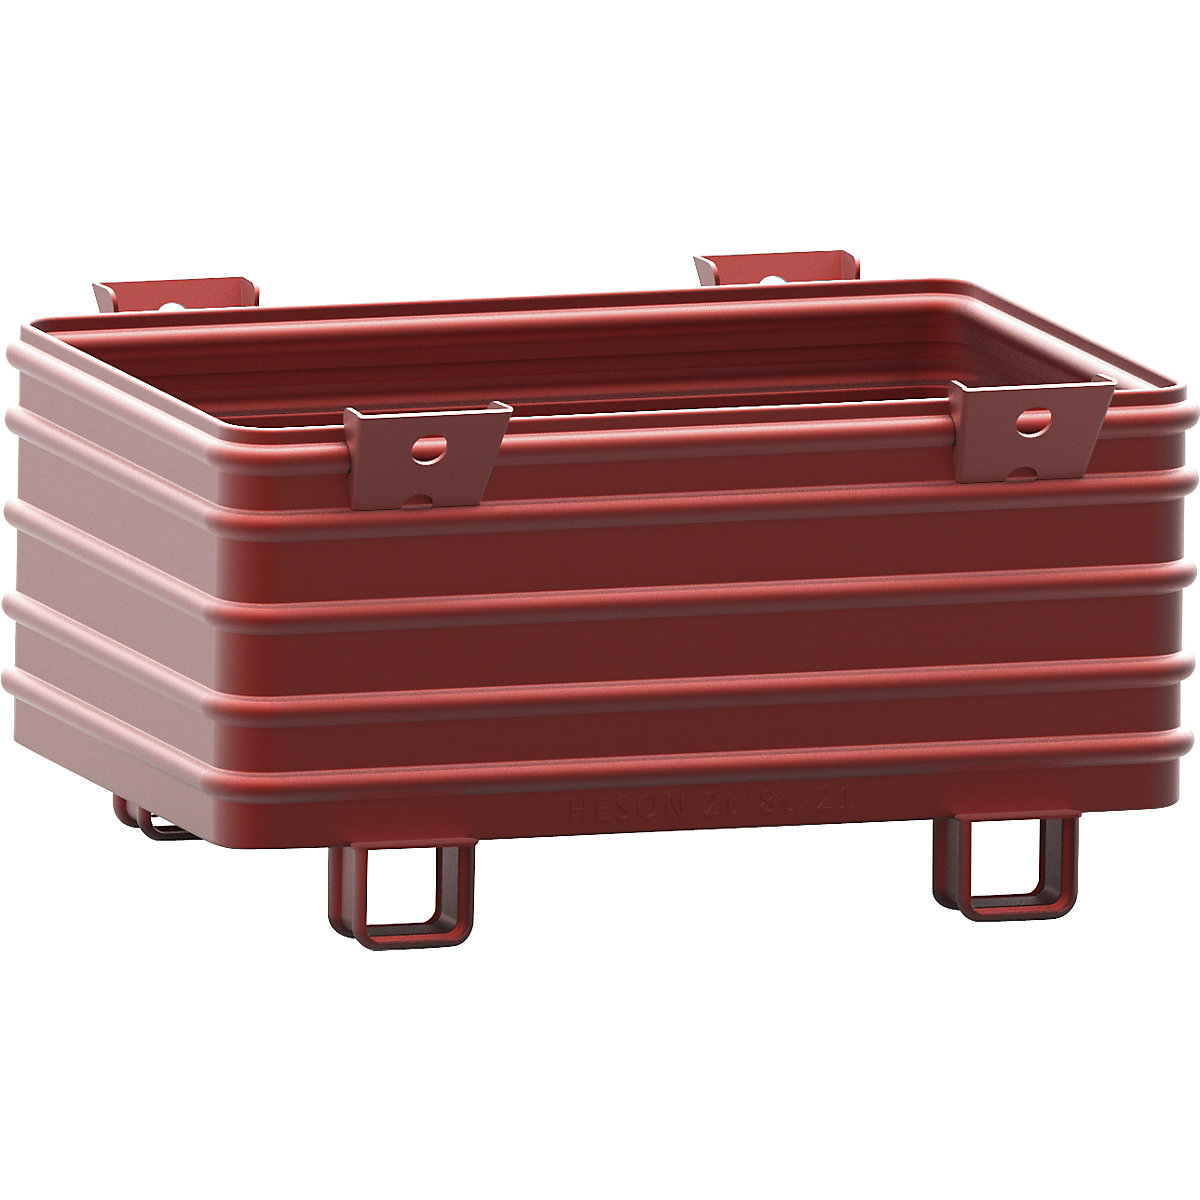 Heson Schwerlast-Stapelbehälter, BxL 800 x 1200 mm, mit U-förmigen Füßen, rot lackiert, ab 10 Stk